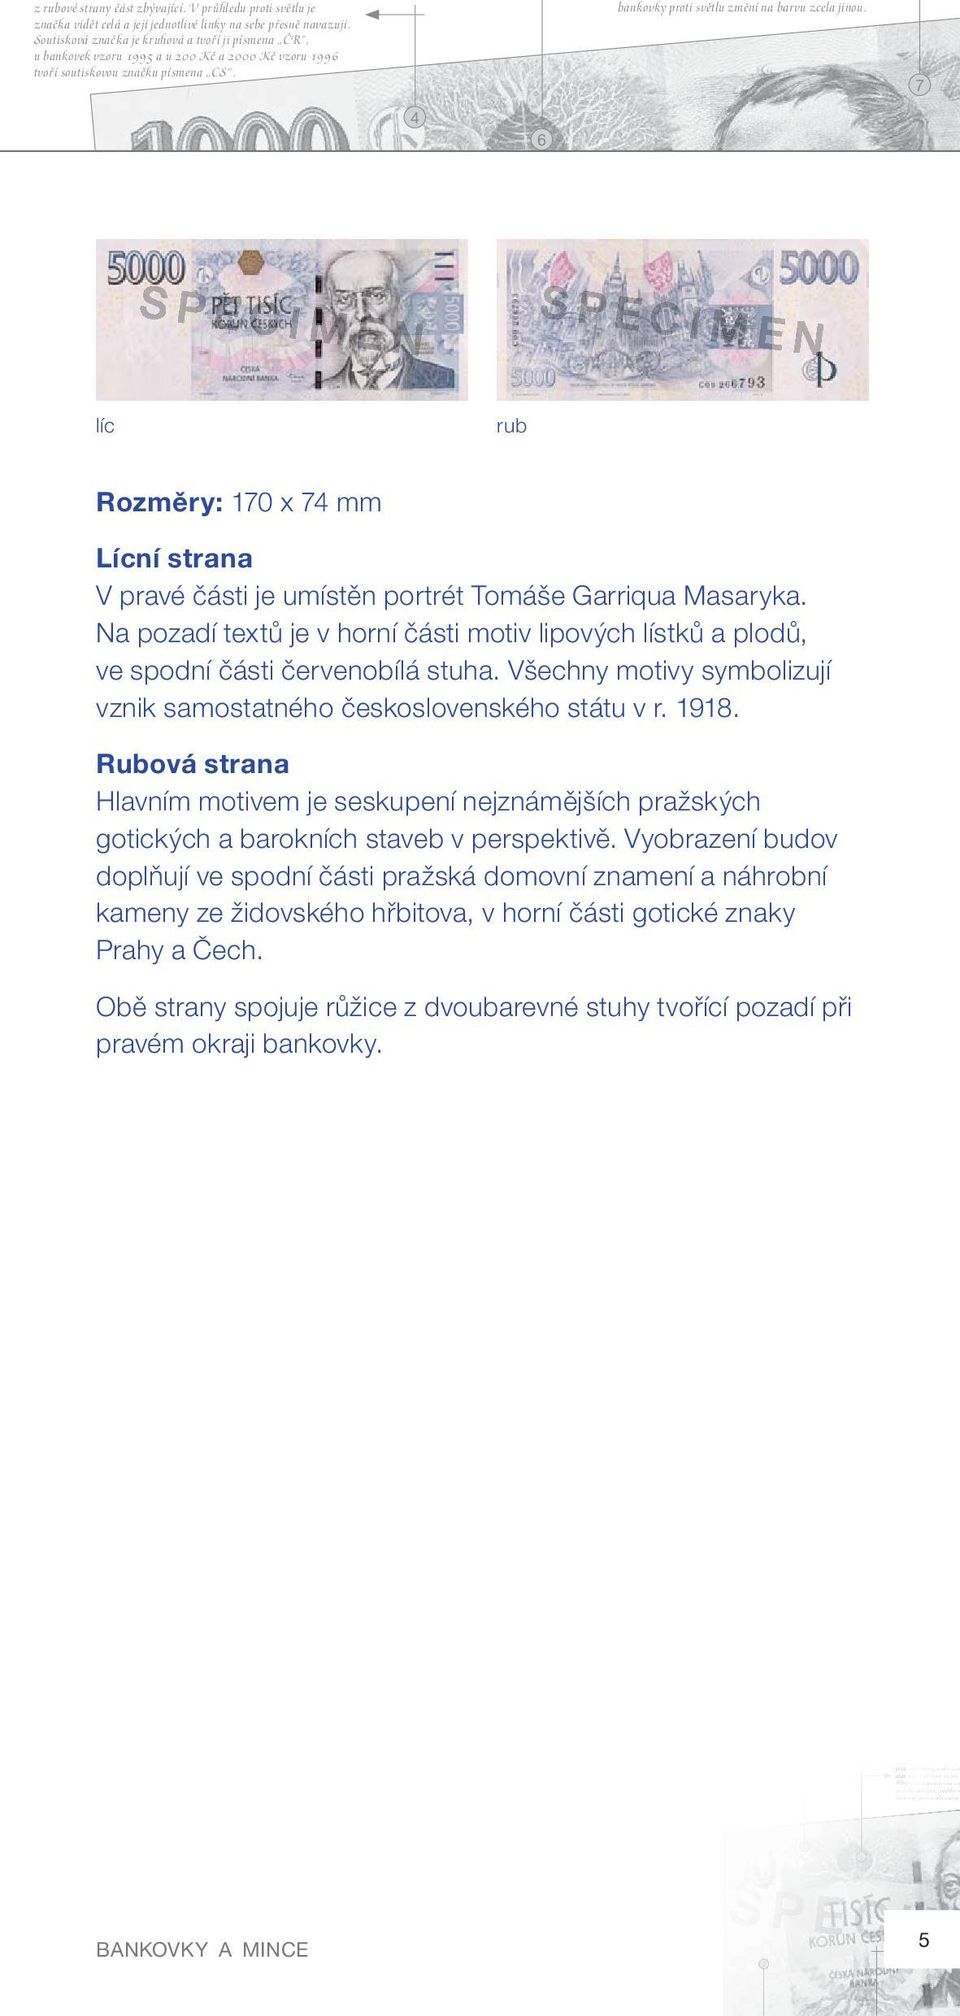 Rozměry: 10 x mm Lícní strana V pravé části je umístěn portrét Tomáše Garriqua Masaryka. Na pozadí textů je v horní části motiv lipových lístků a plodů, ve spodní části červenobílá stuha.